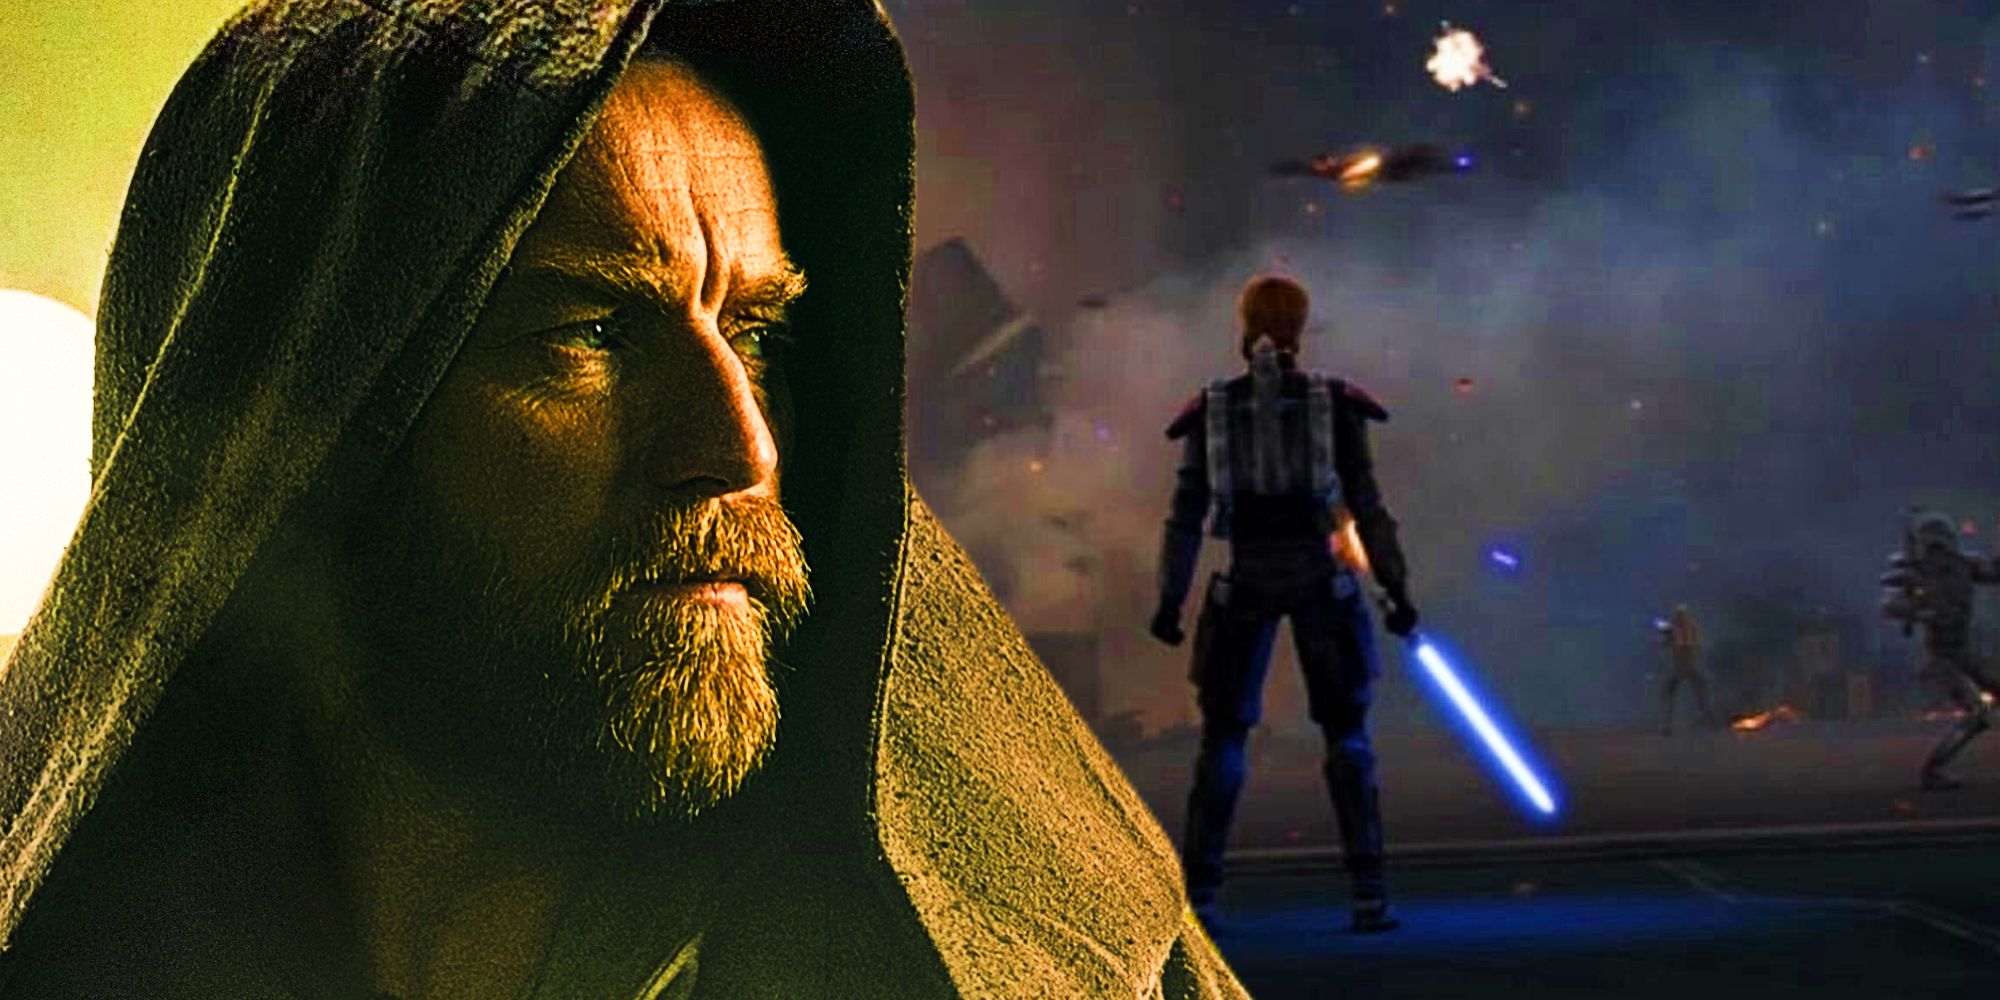 Obi-Wan in Clone Wars and Obi-Wan Kenobi